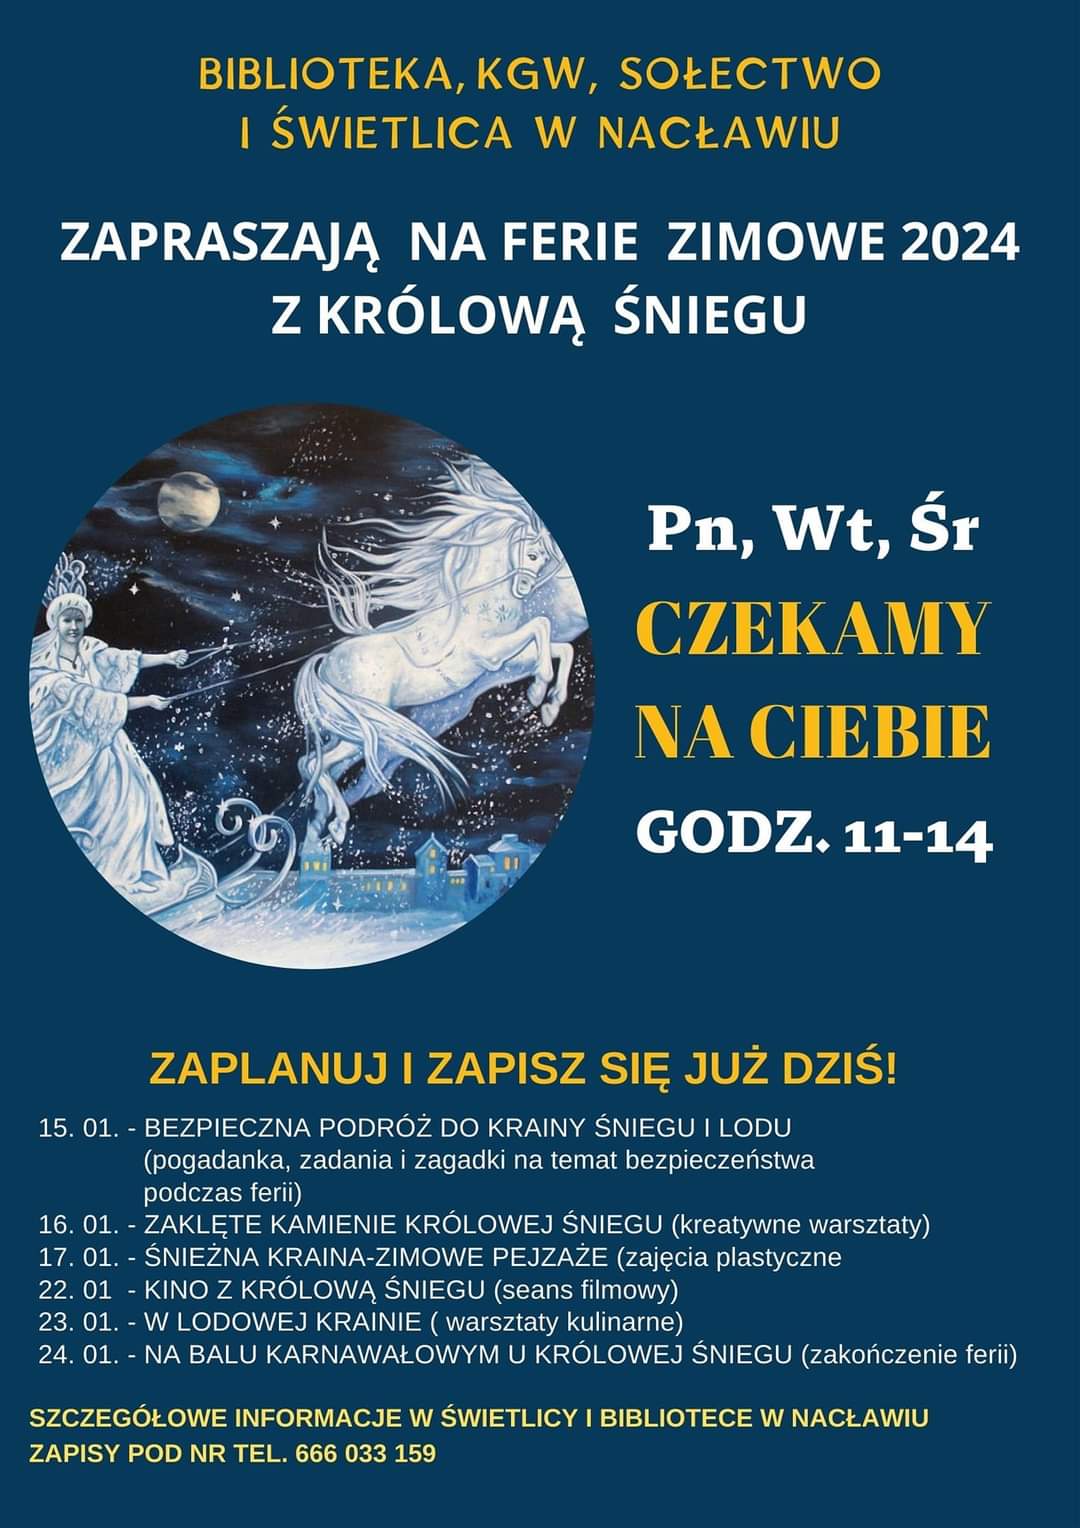 Plakat z zaproszeniem na ferie zimowe w Polanowie, miejscowość Nacław